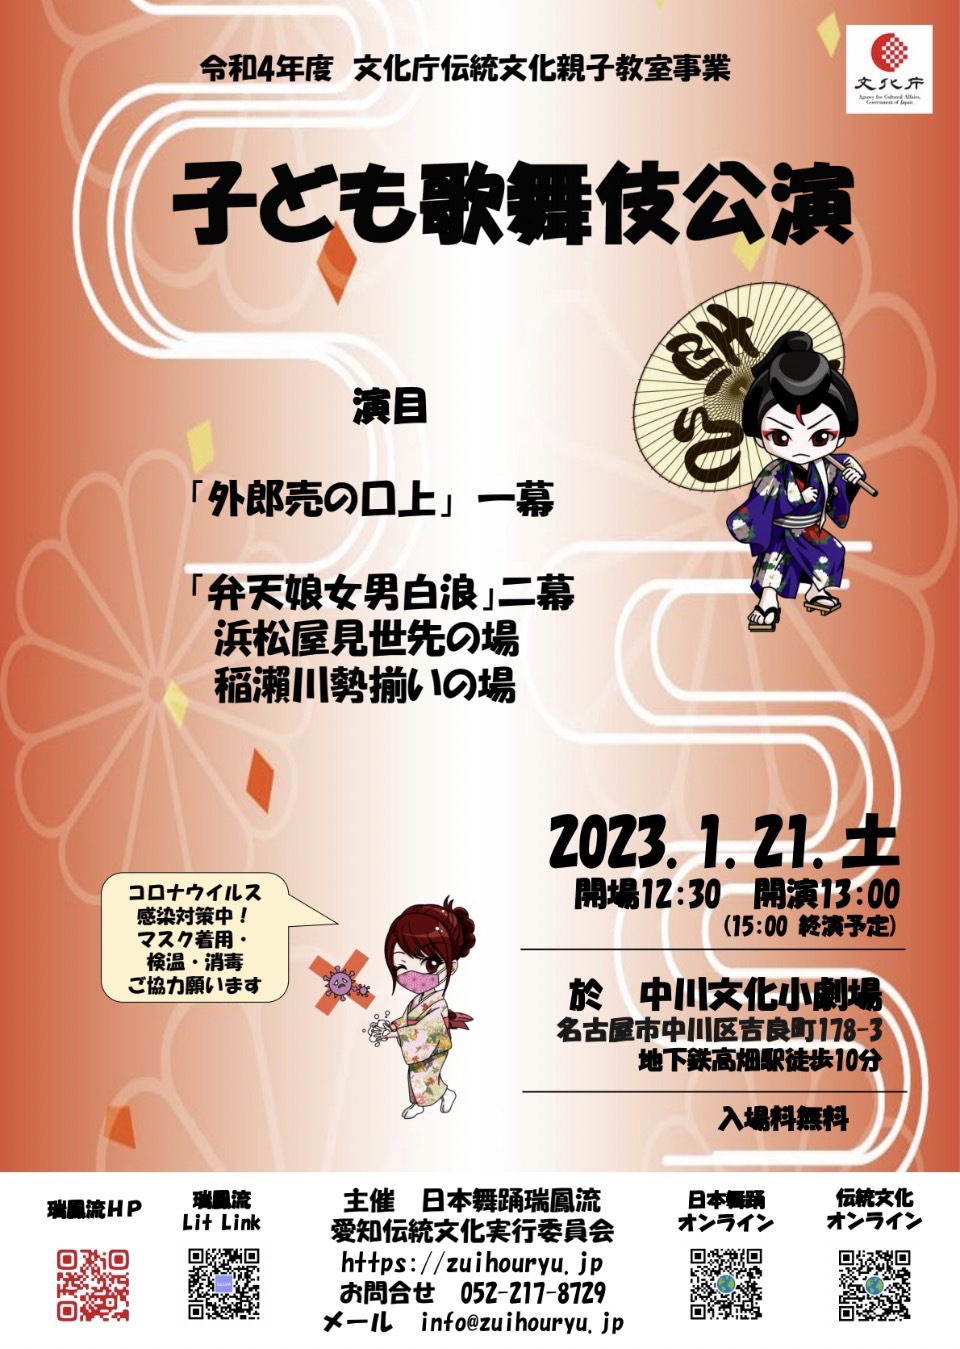 2023年1月21日(土)『子ども歌舞伎公演』のご案内 | 愛知県日進市の日舞